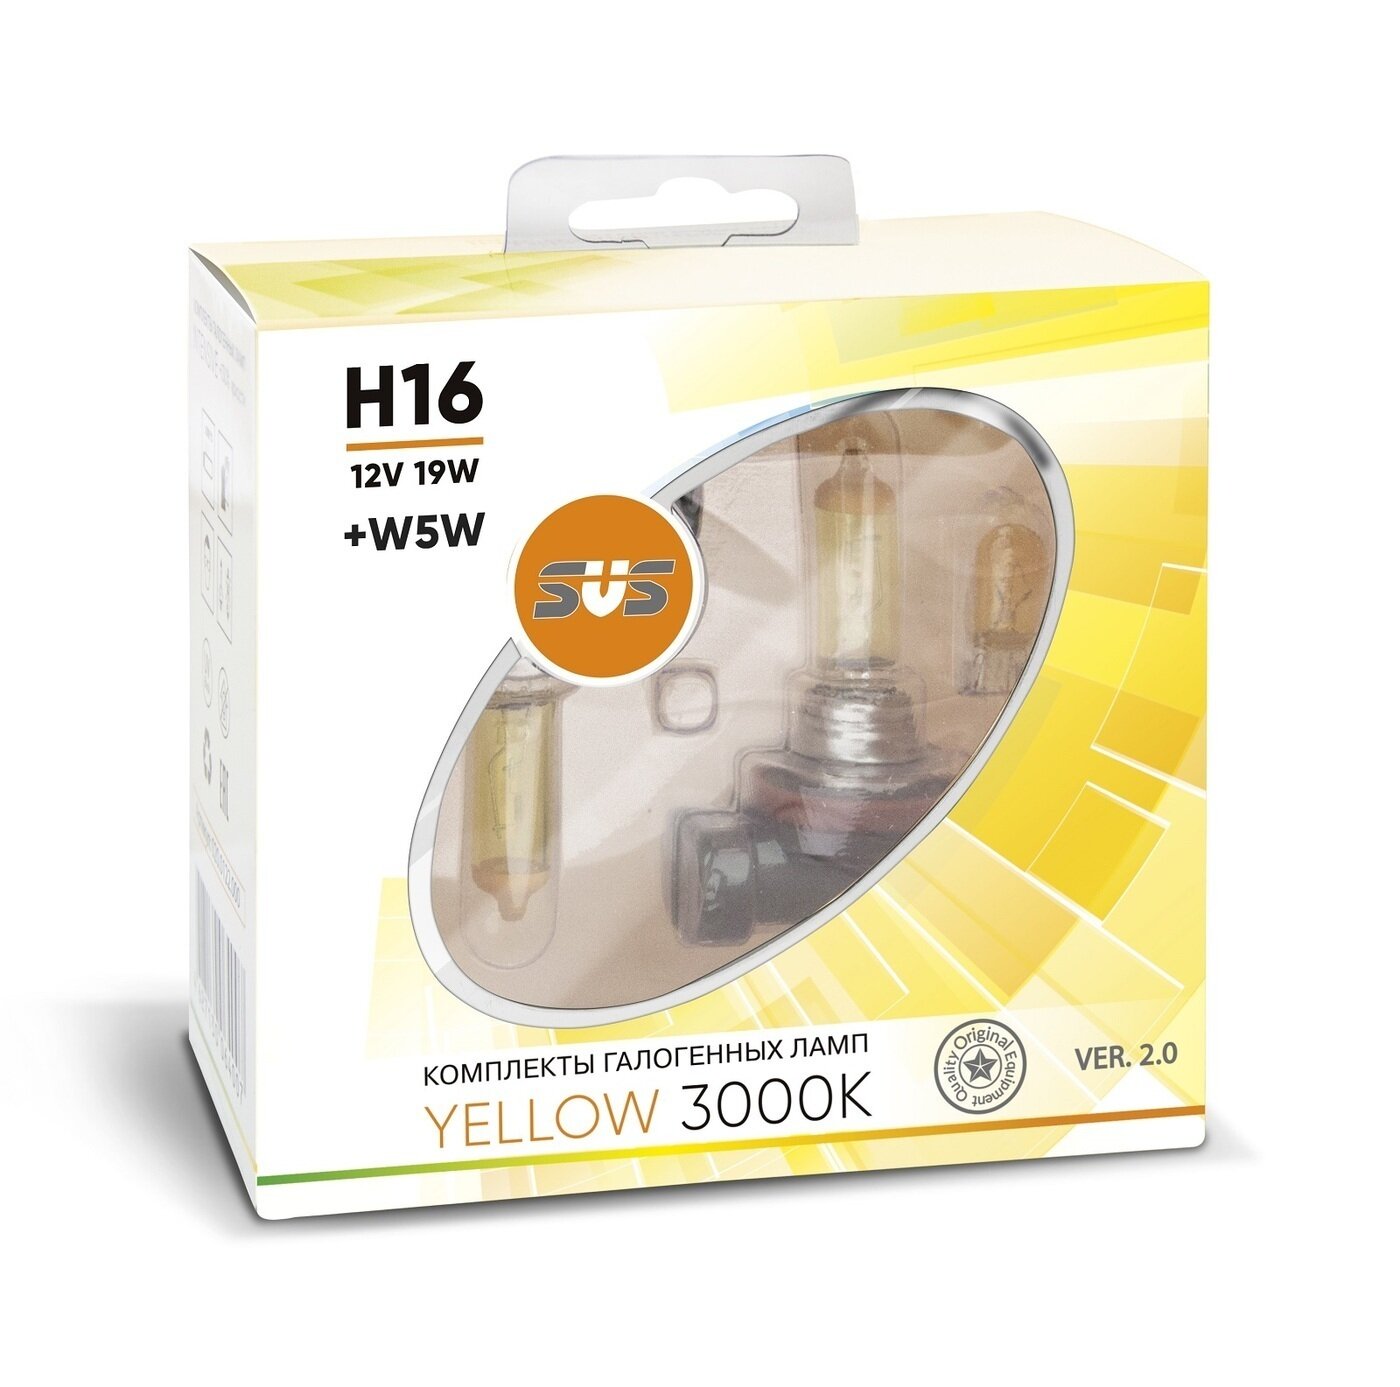 Галогенная лампа SVS Yellow 3000K H16 12V 19W Ver.2.0 (2 шт) - фото №3